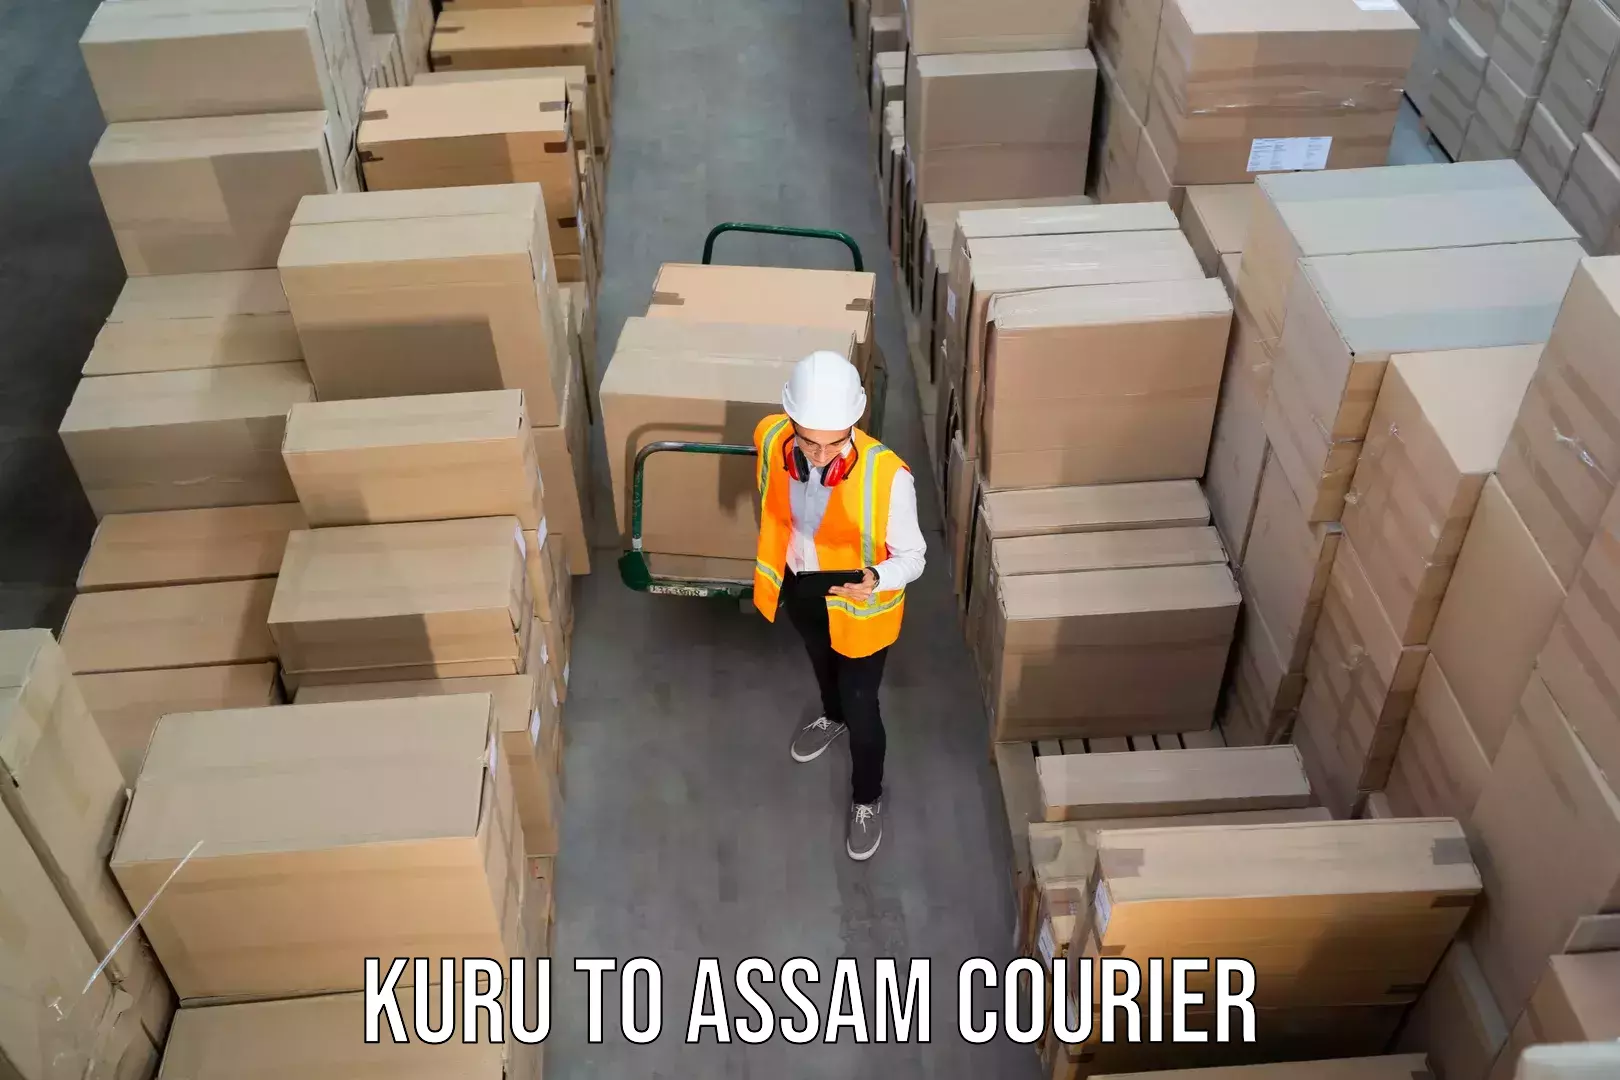 Courier service partnerships Kuru to Assam